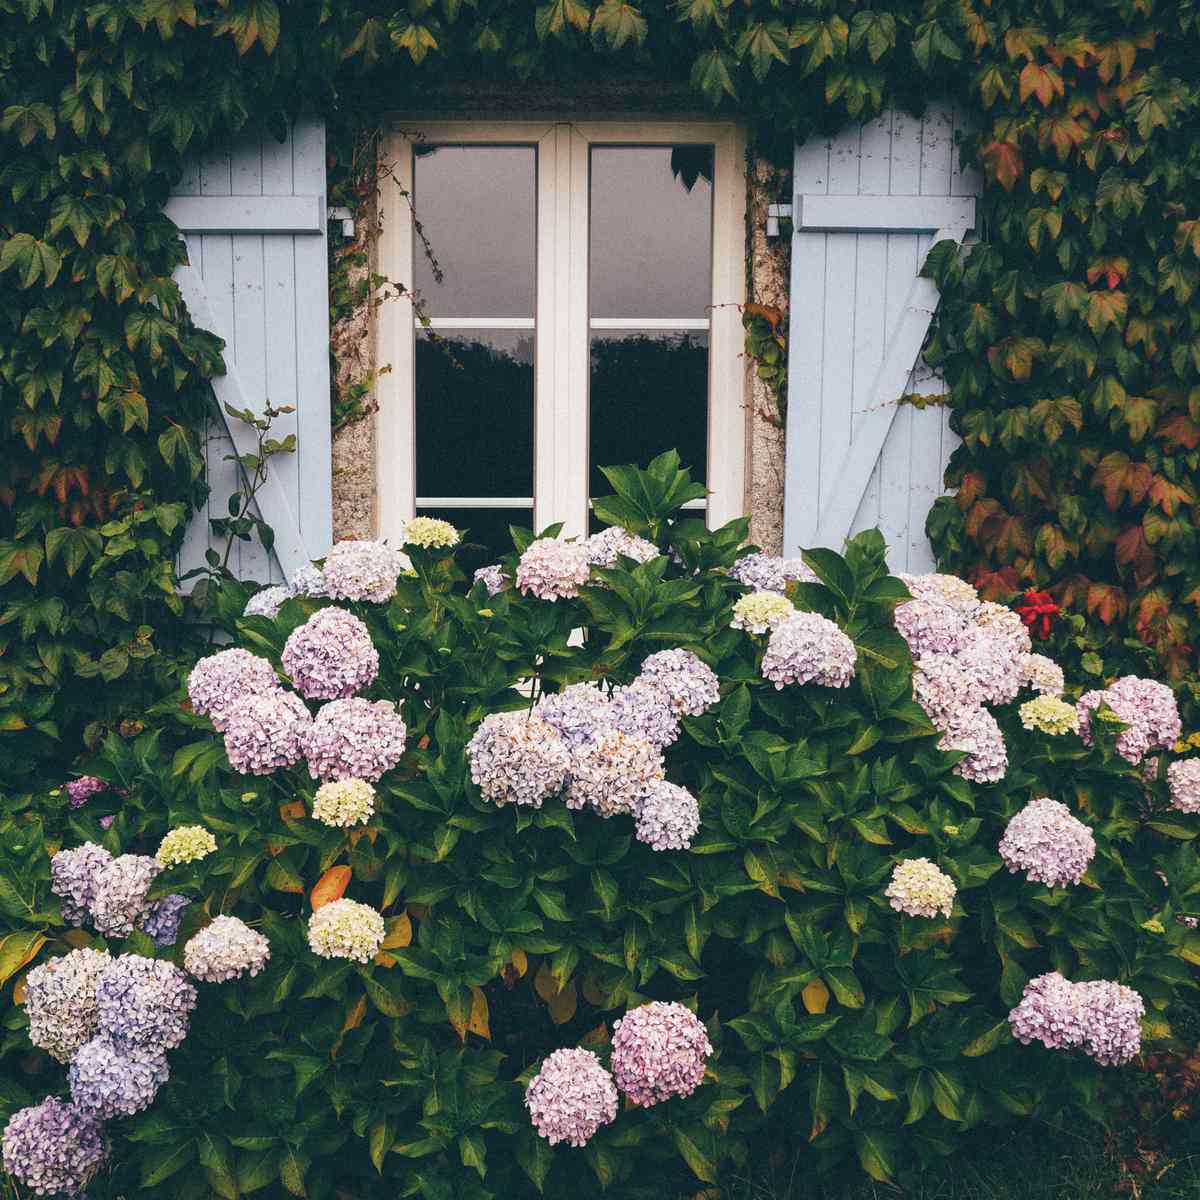 Hydrangea Flowering Plants In Yard in front of window with blue shutters